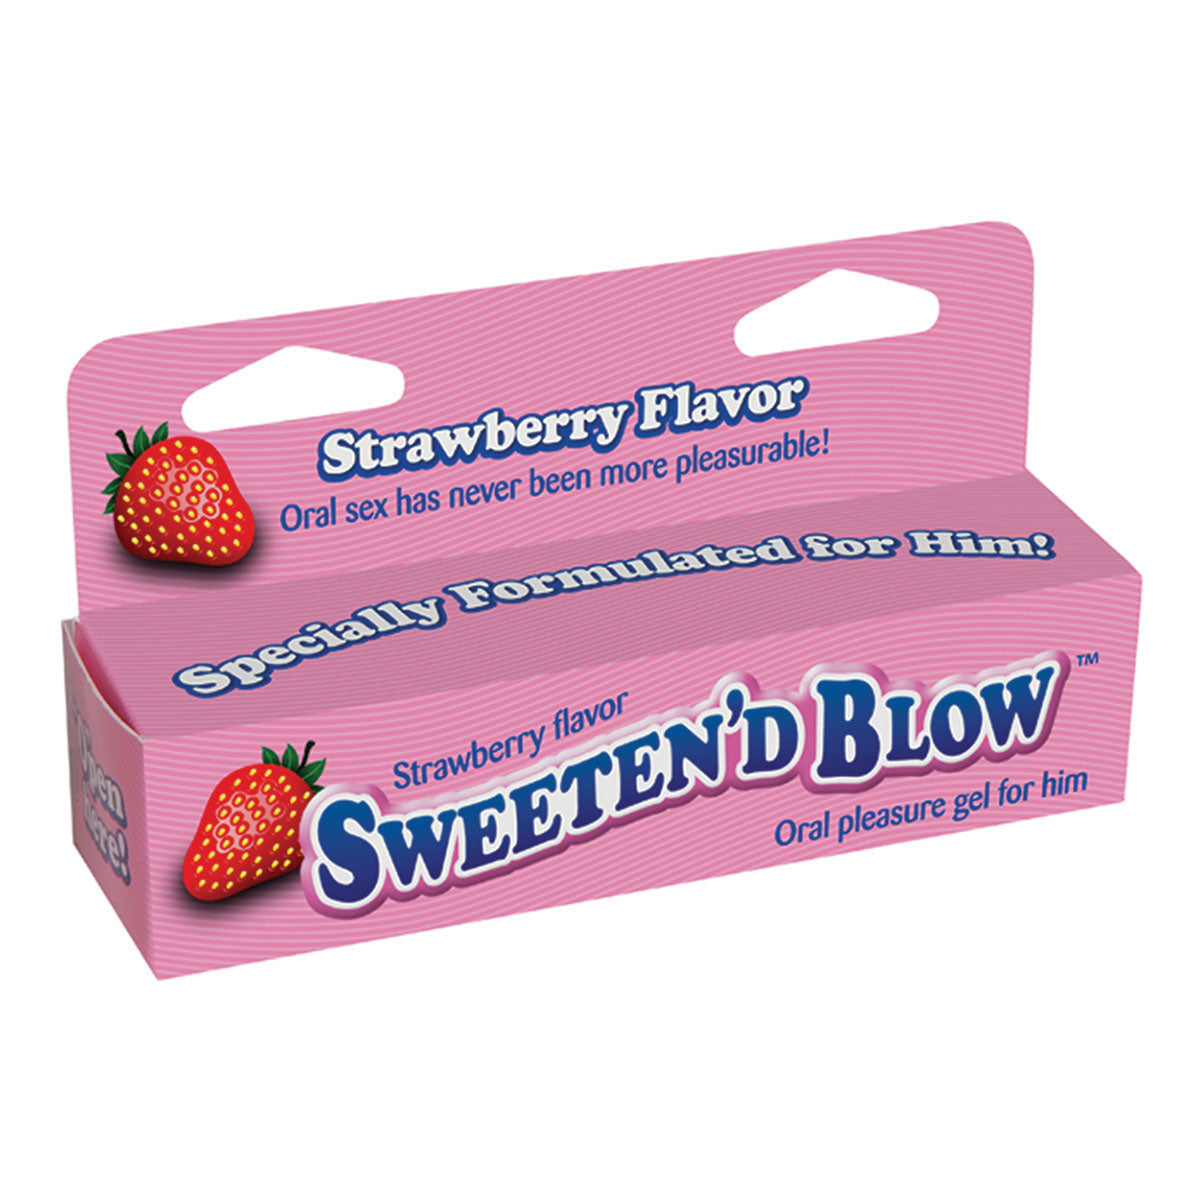 Sweeten'd Blow Oral Pleasure Gel 1.5 oz. - Strawberry